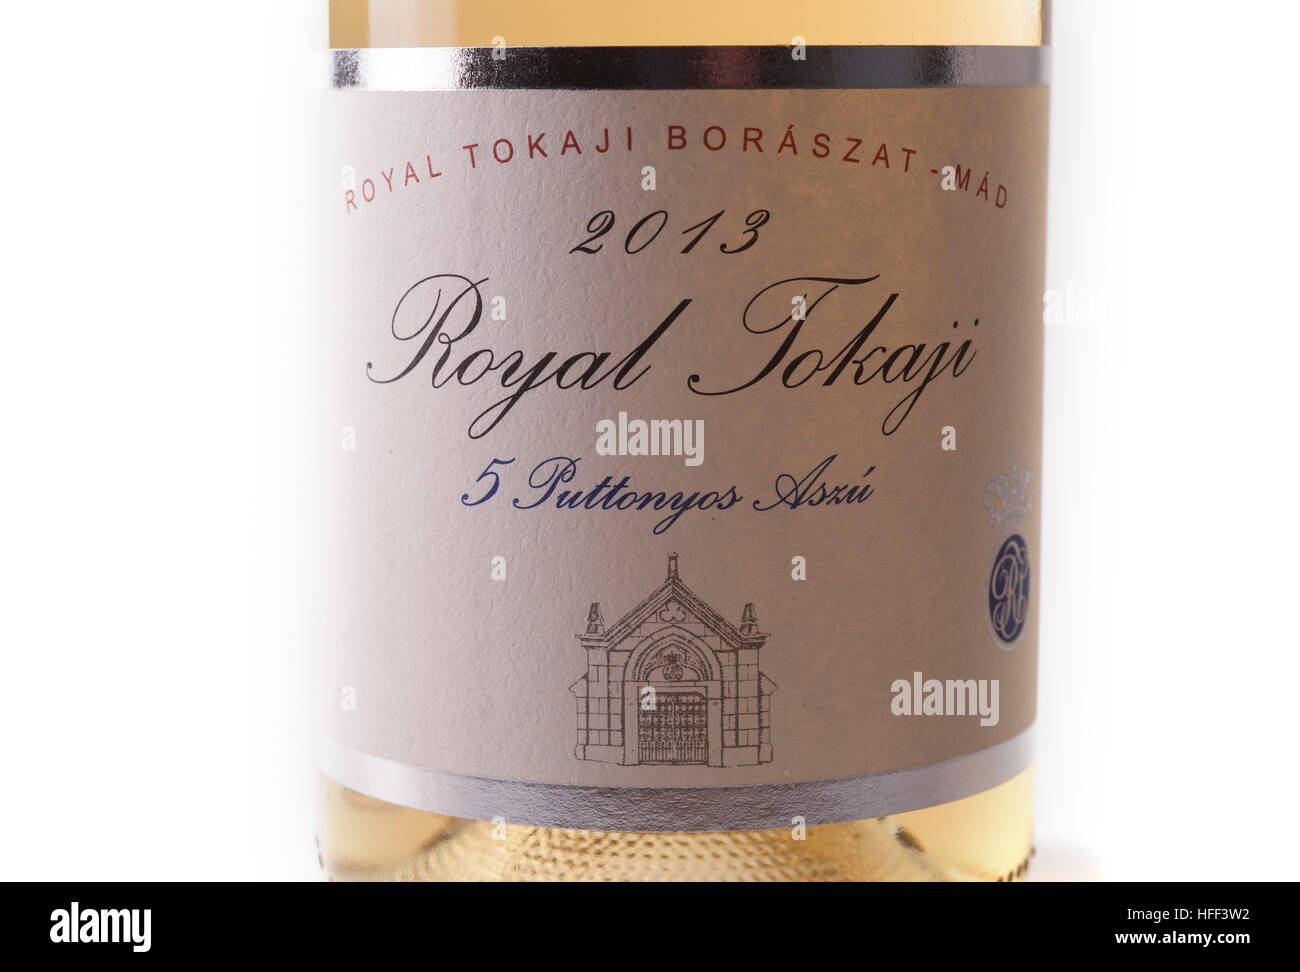 Aszu 5 puttonyos 2013 Tokai, étiquette de vin de la région viticole de Tokaj Hongrie Banque D'Images